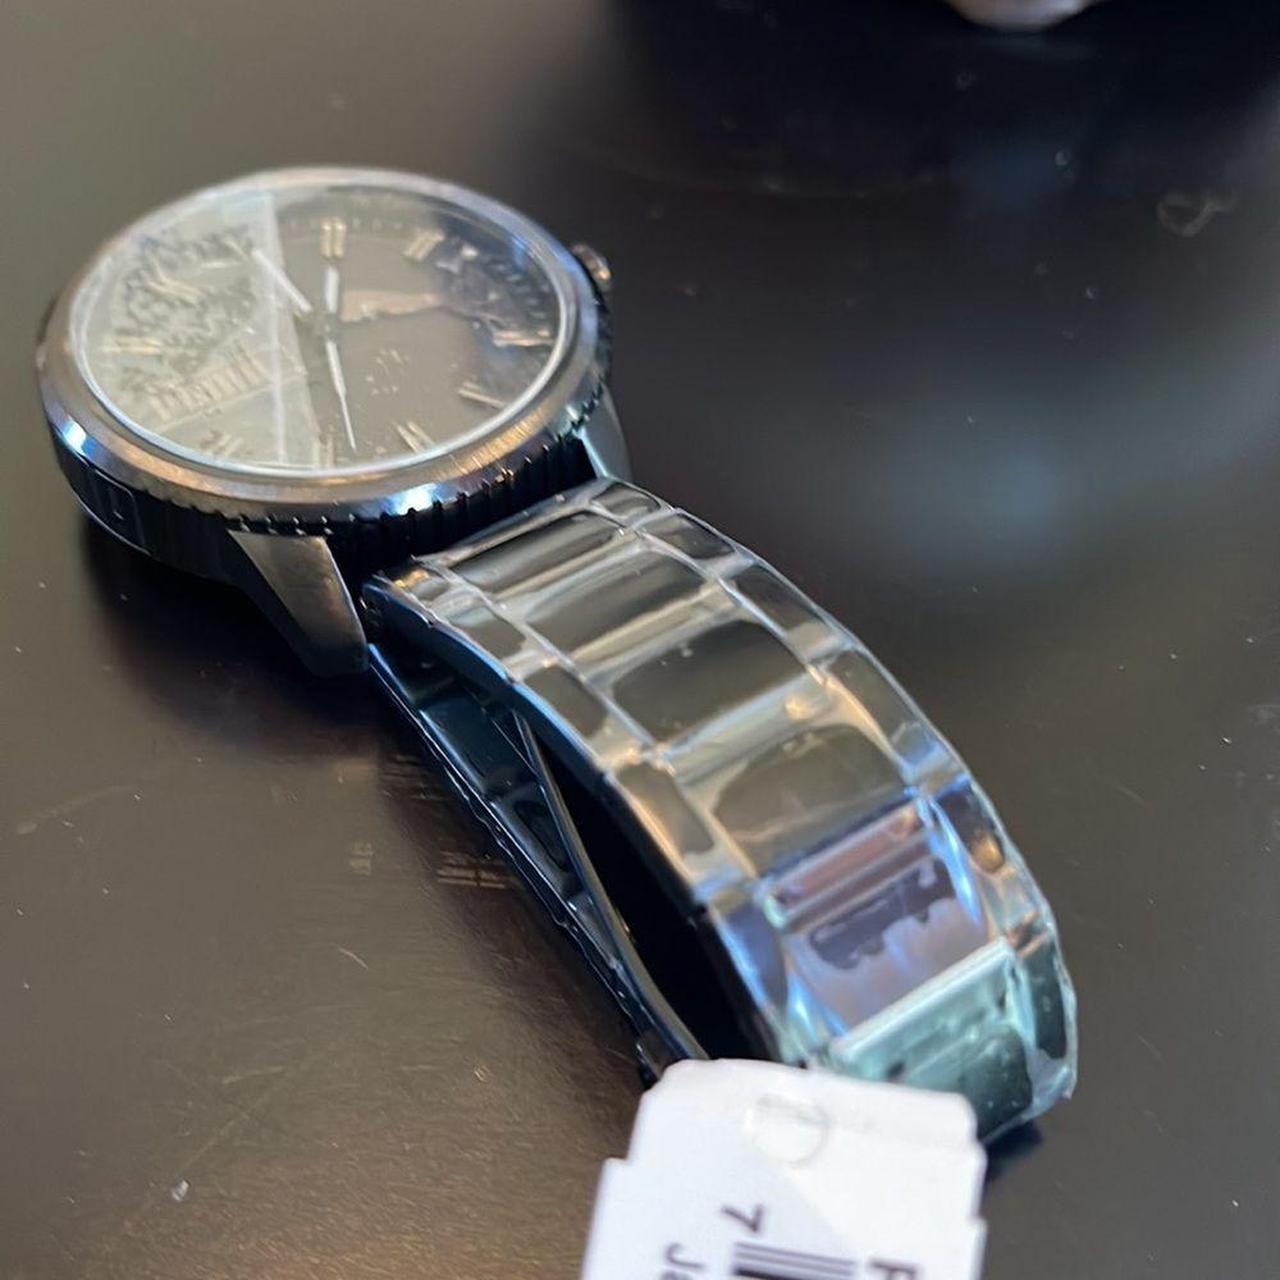 This 46mm ultra fresh watch features a black matte... - Depop